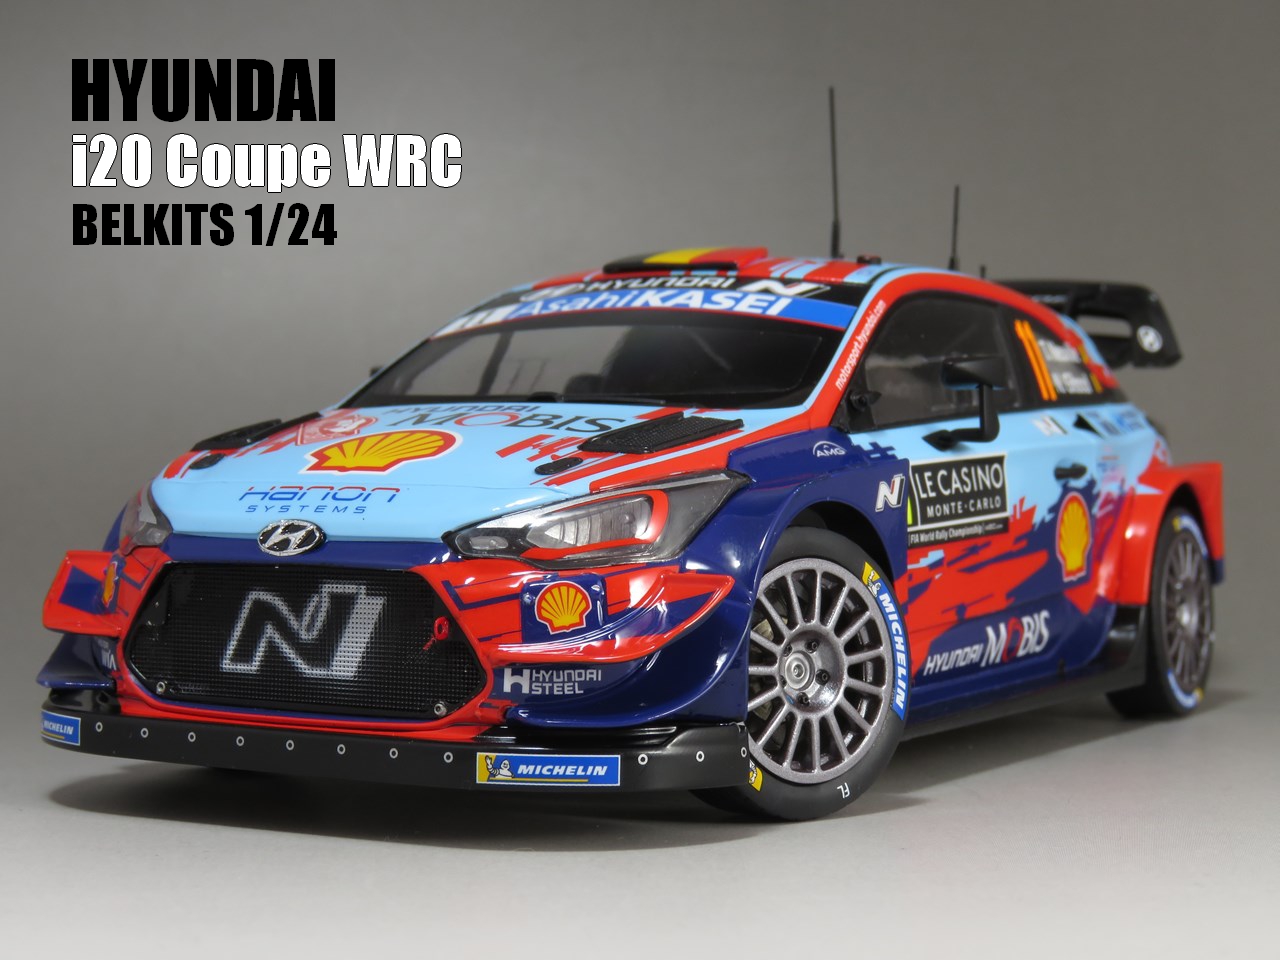 ベルキット 1/24 HYUNDAI i20 COUPE WRC 2020